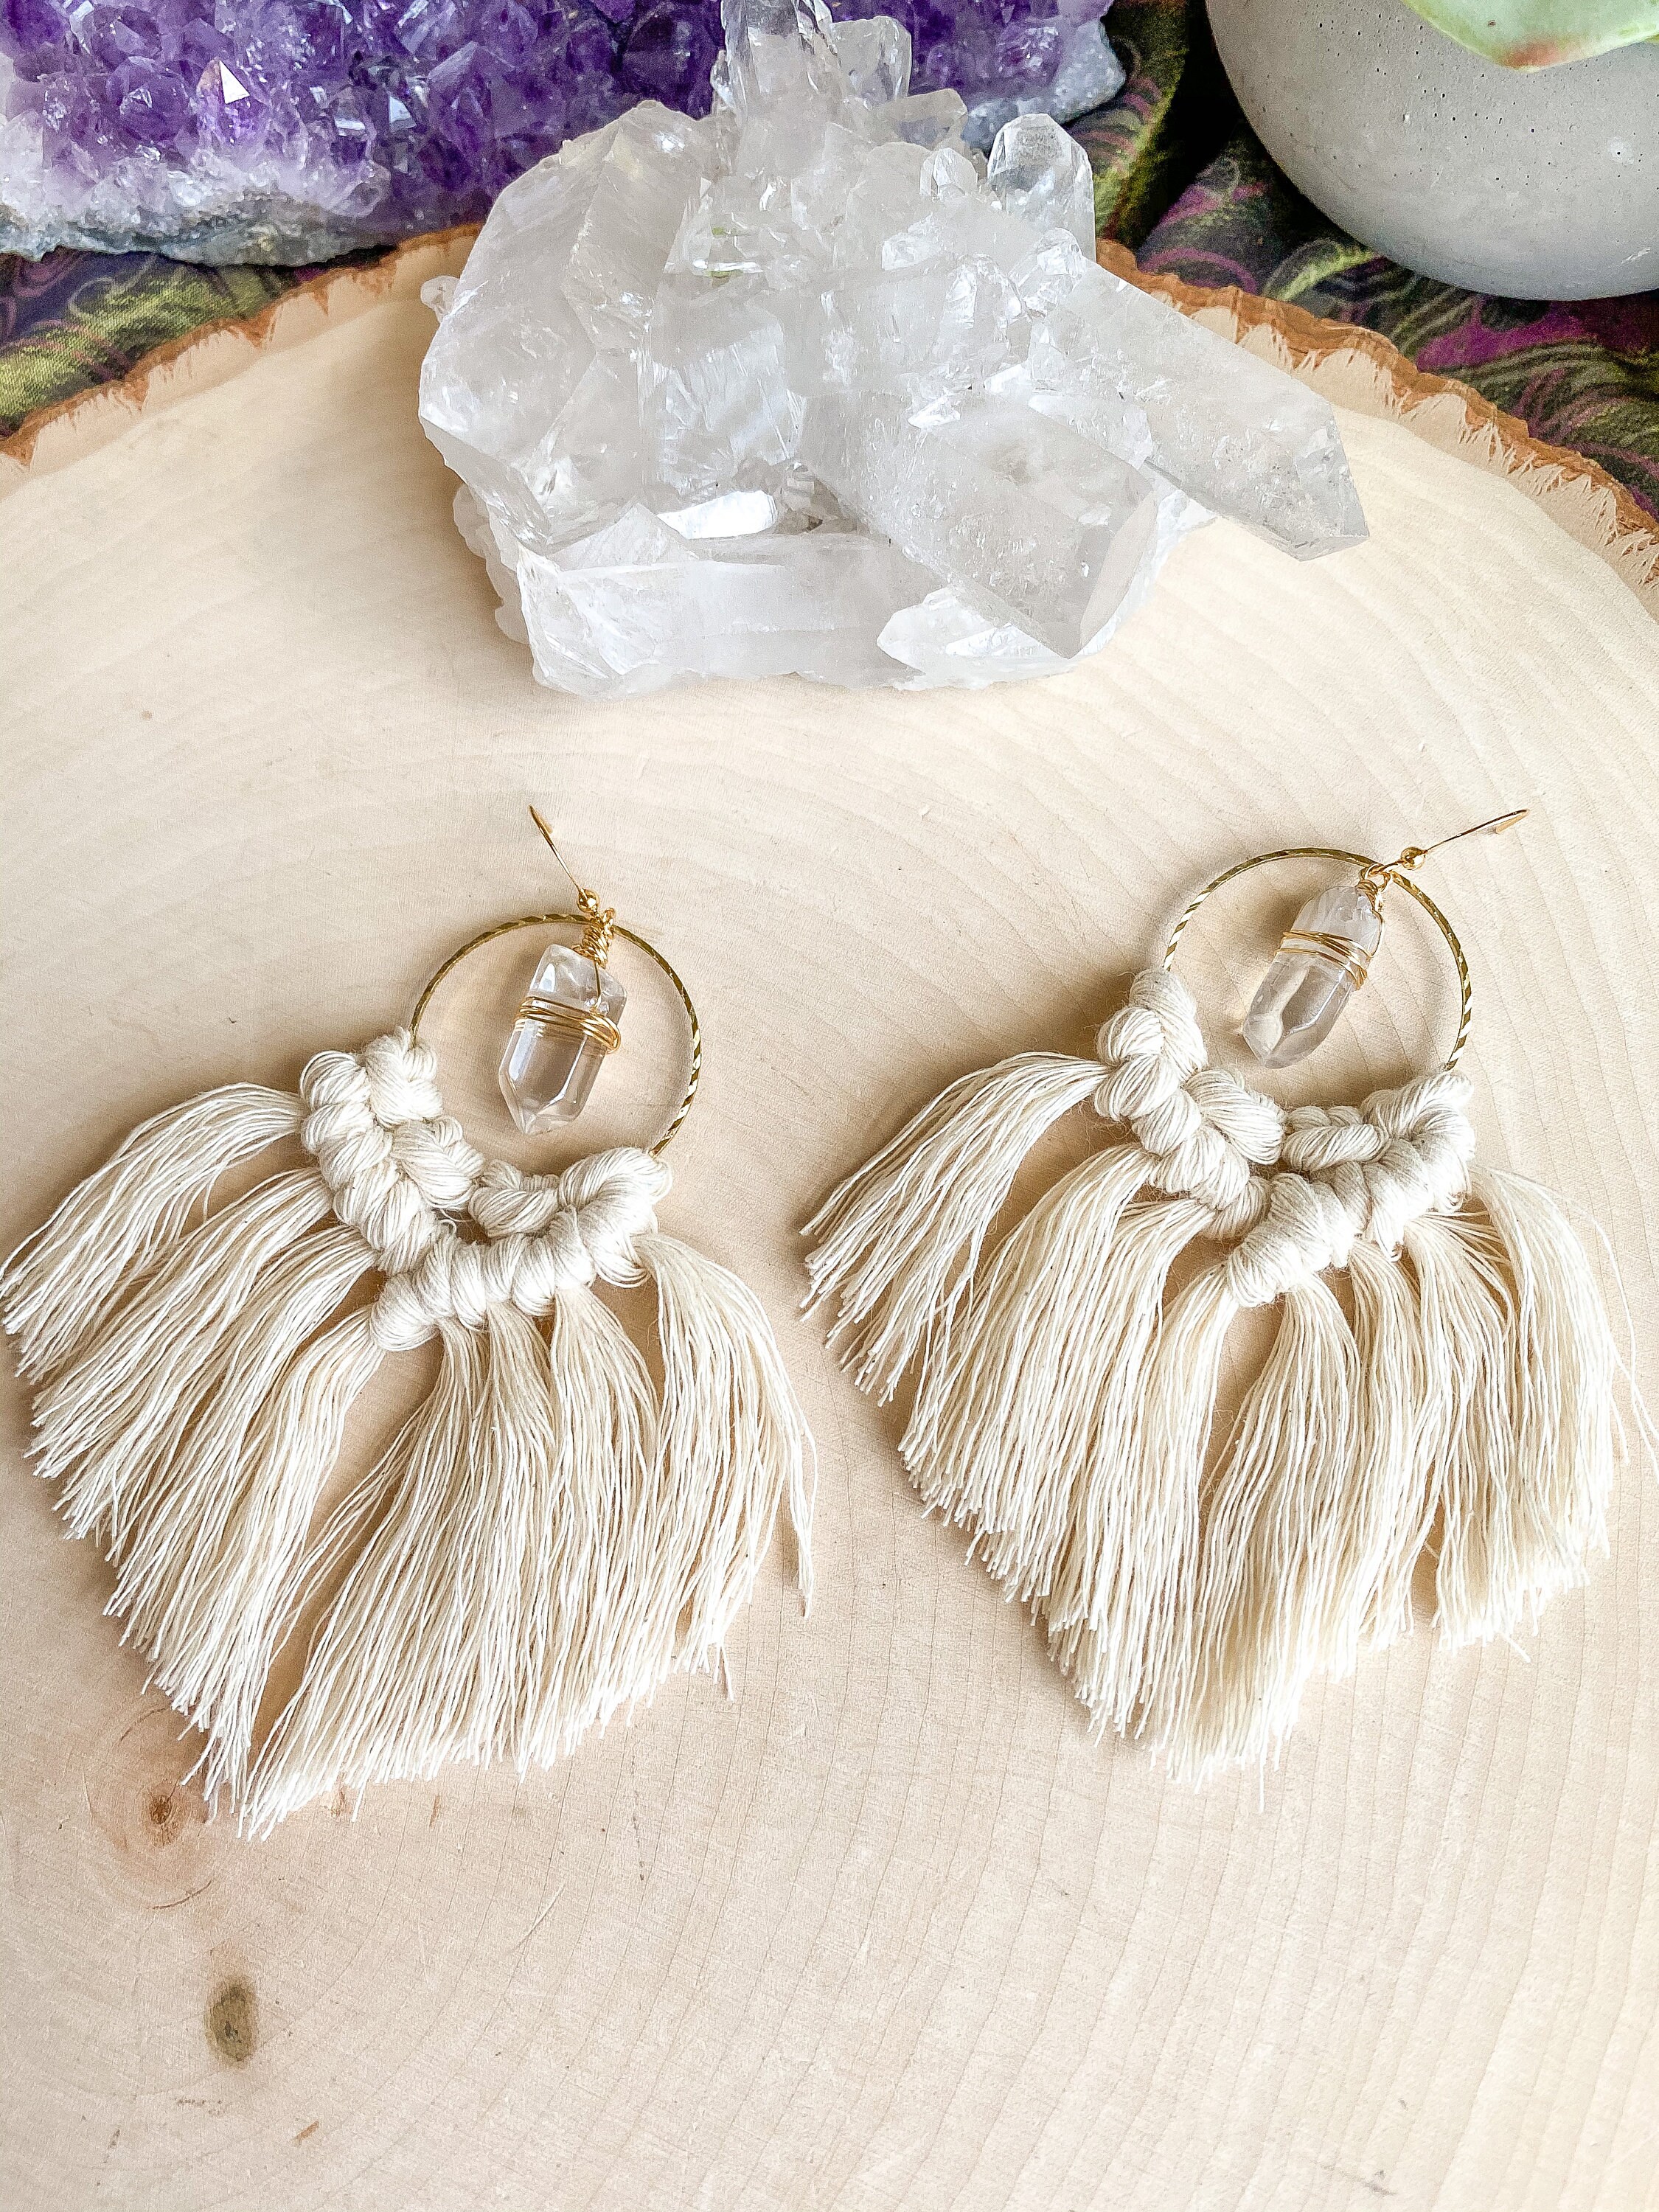 Pineapple Macrame Earrings - Handmade Costa Rica Design! – Costa Verde  Bracelets